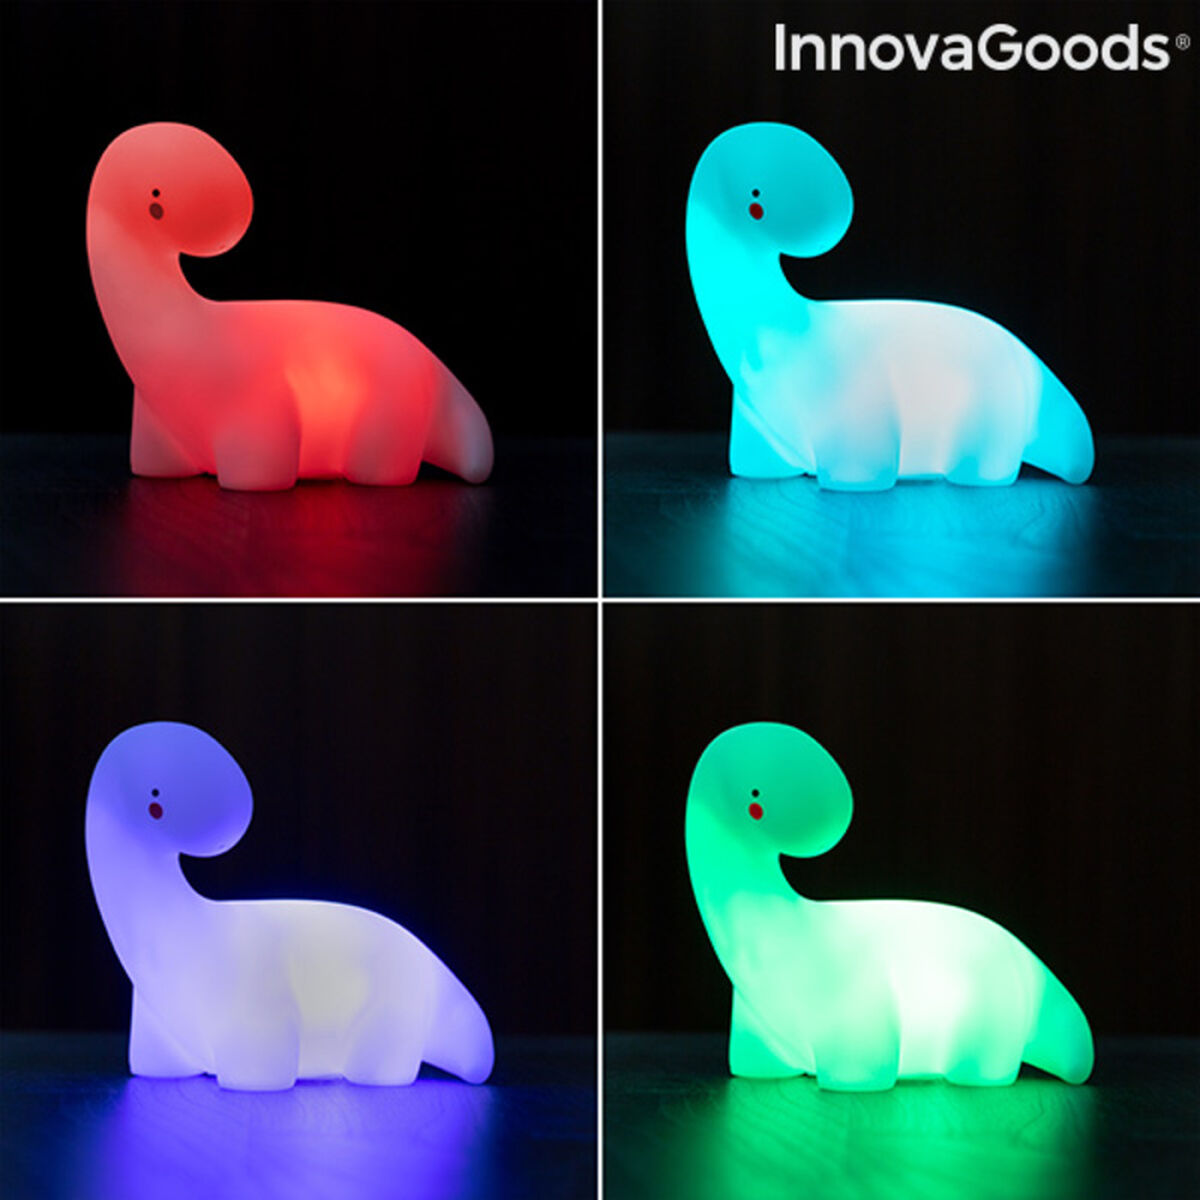 Lámpara Dinosaurio LED Multicolor Lightosaurus InnovaGoods IG815318 (Reacondicionado A)